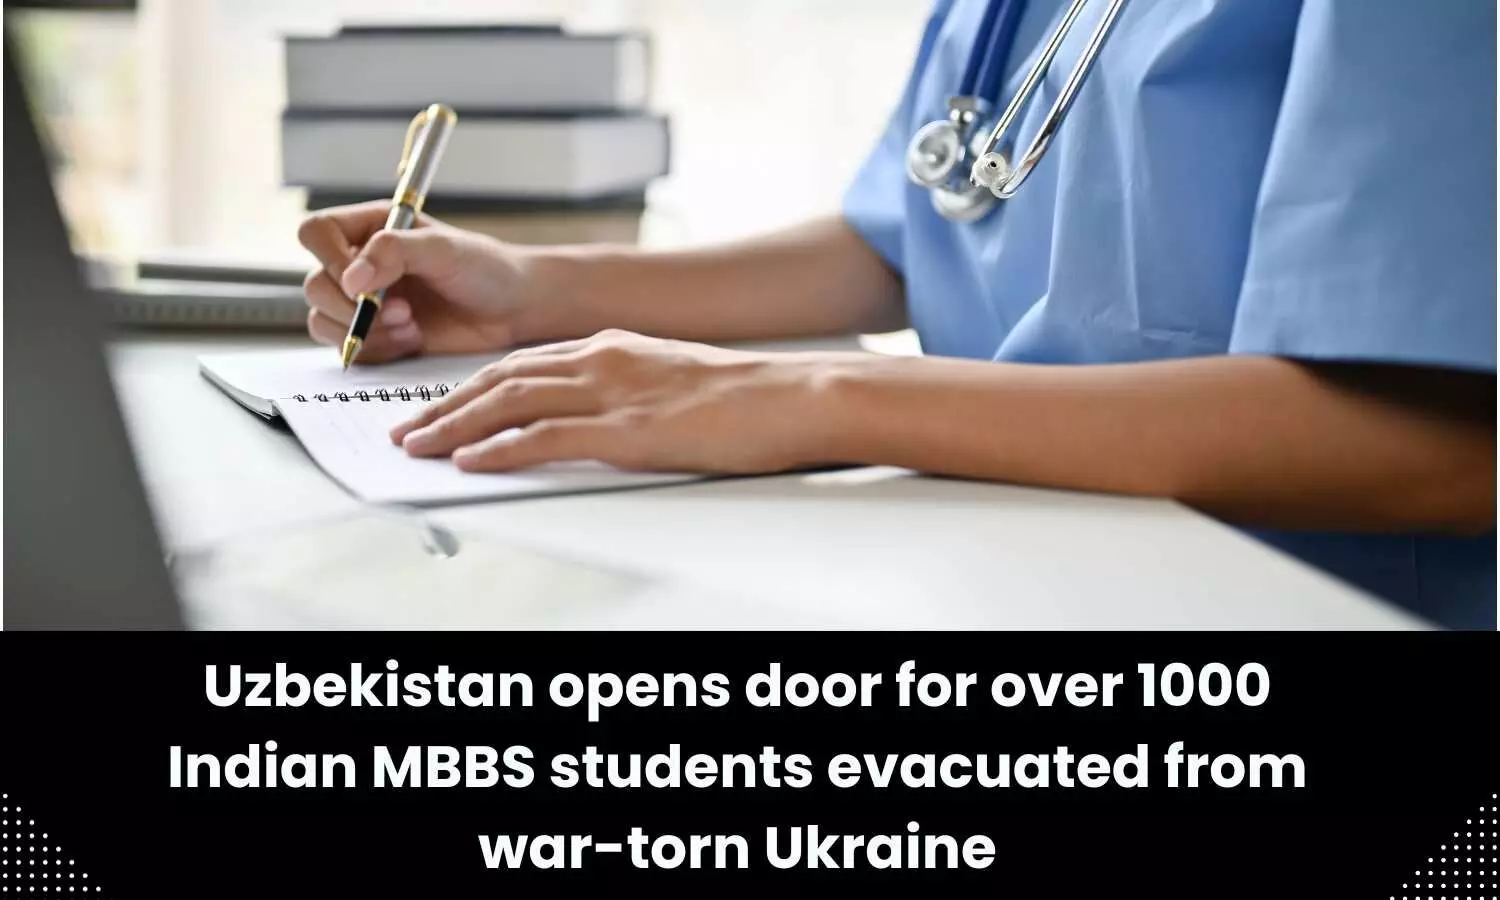 Over 1000 Indian MBBS students evacuated from war-torn Ukraine resume studies in Uzbekistan